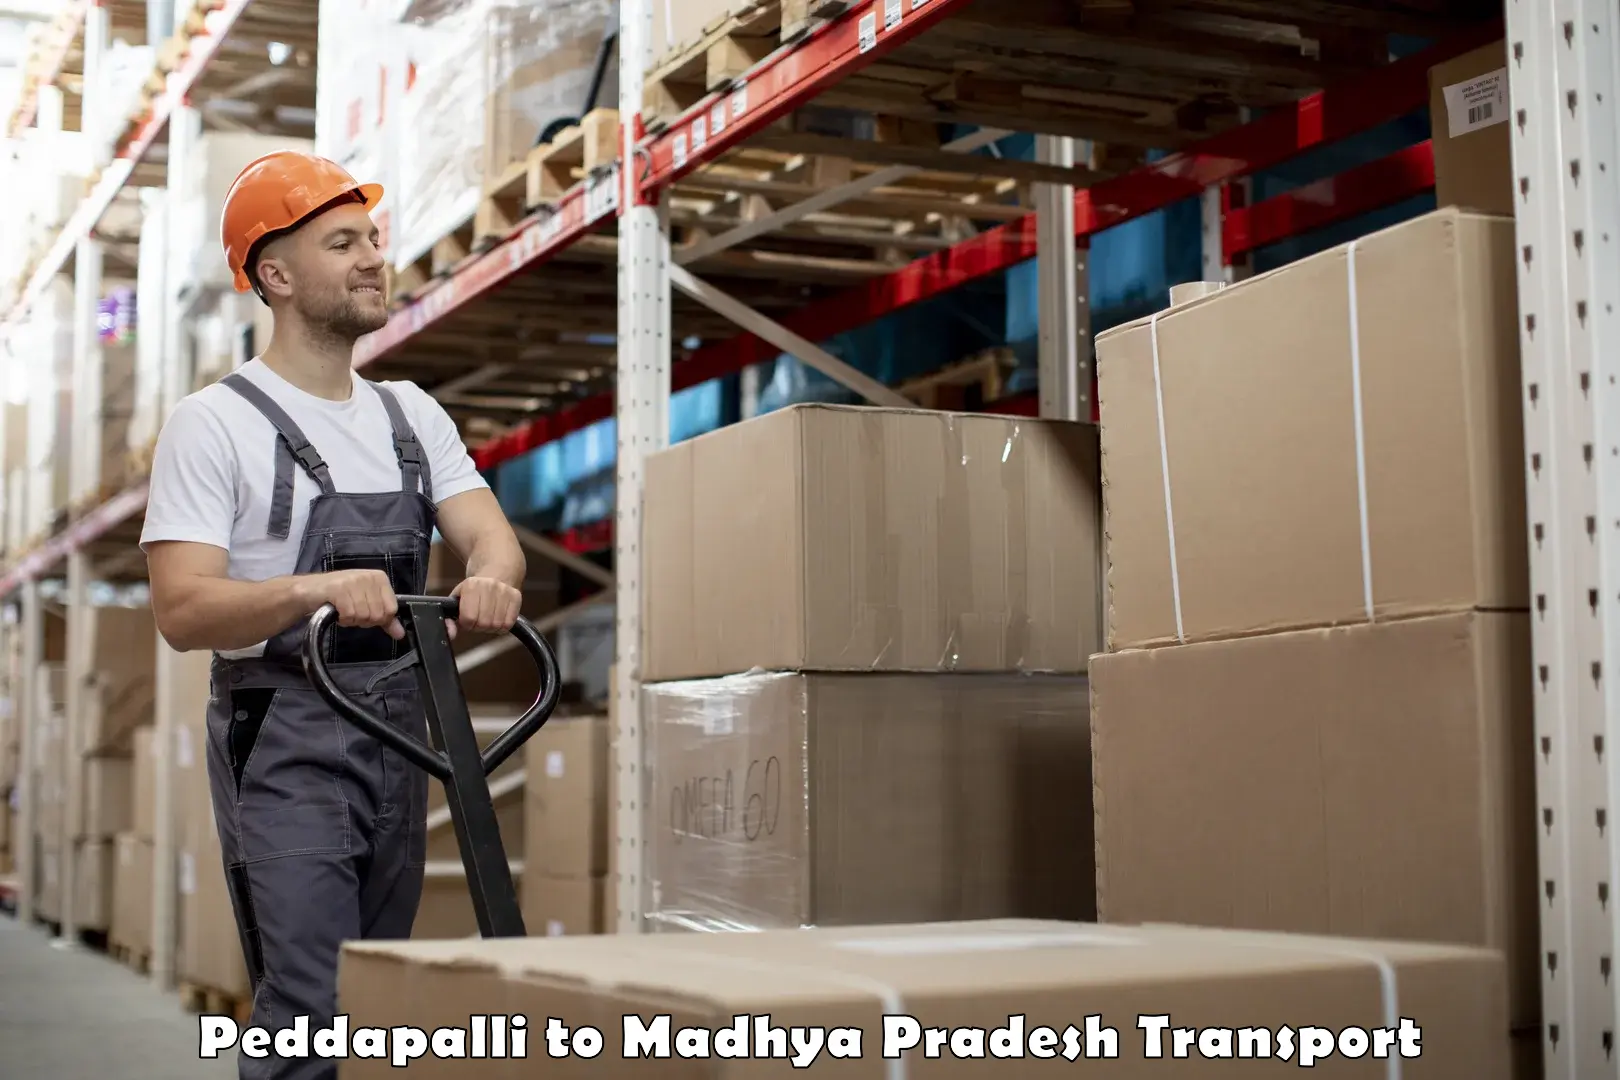 Shipping partner Peddapalli to Budaganj